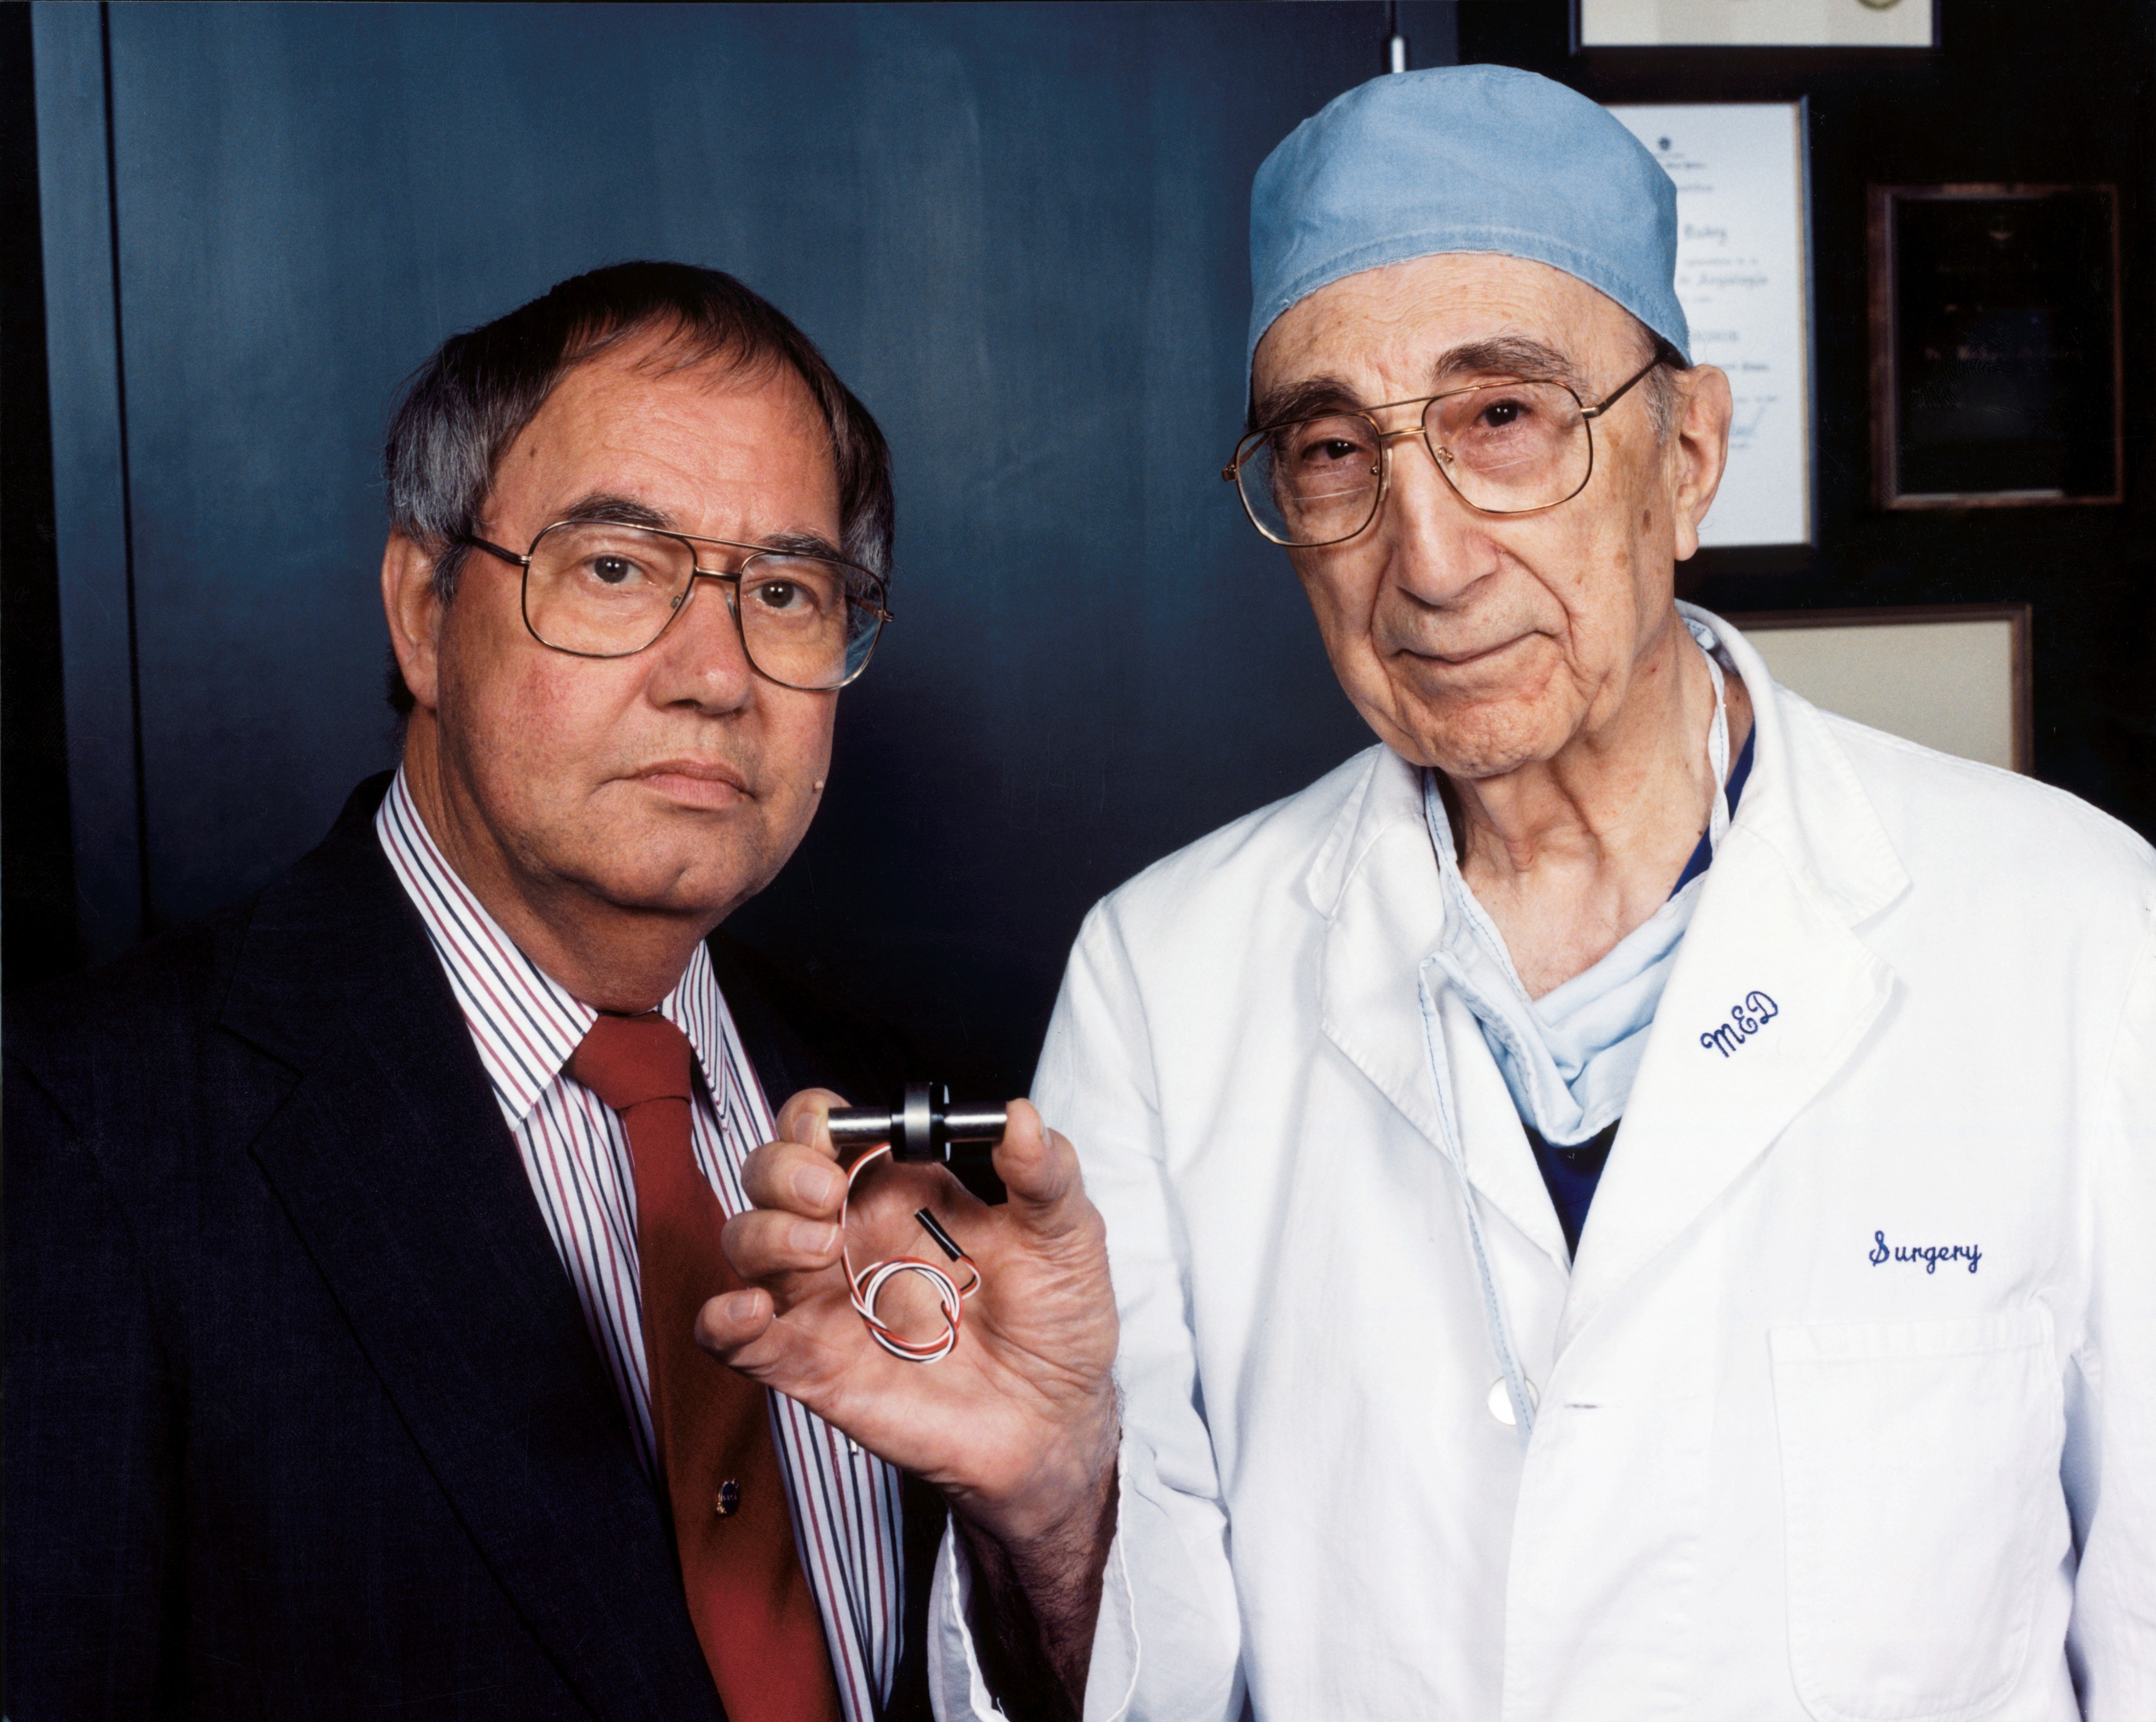 Доктор Майкл Дебейки (справа) держит MicroMed-DeBakey VAD (устройство для помощи желудочкам), крошечный насос для помощи сердцу. С ним один из его пациентов, перенесших операцию по пересадке сердца, Дэвид Саусье, инженер Космического центра имени Джонсона